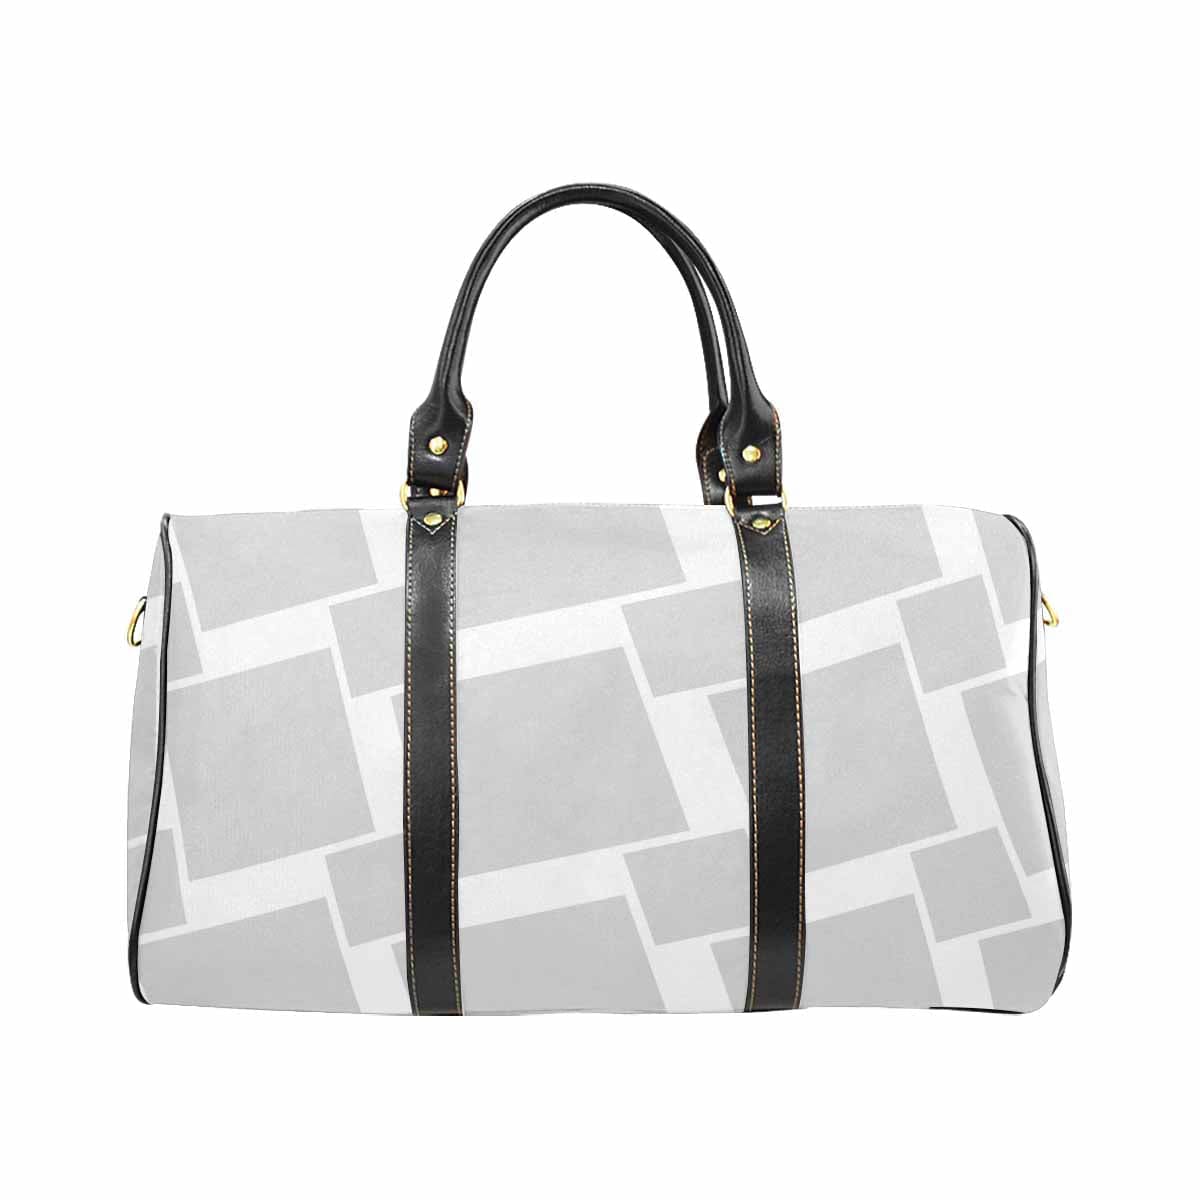 Travel Bag Adjustable Shoulder Strap Carry On Bag Light Grey - Bags | Travel